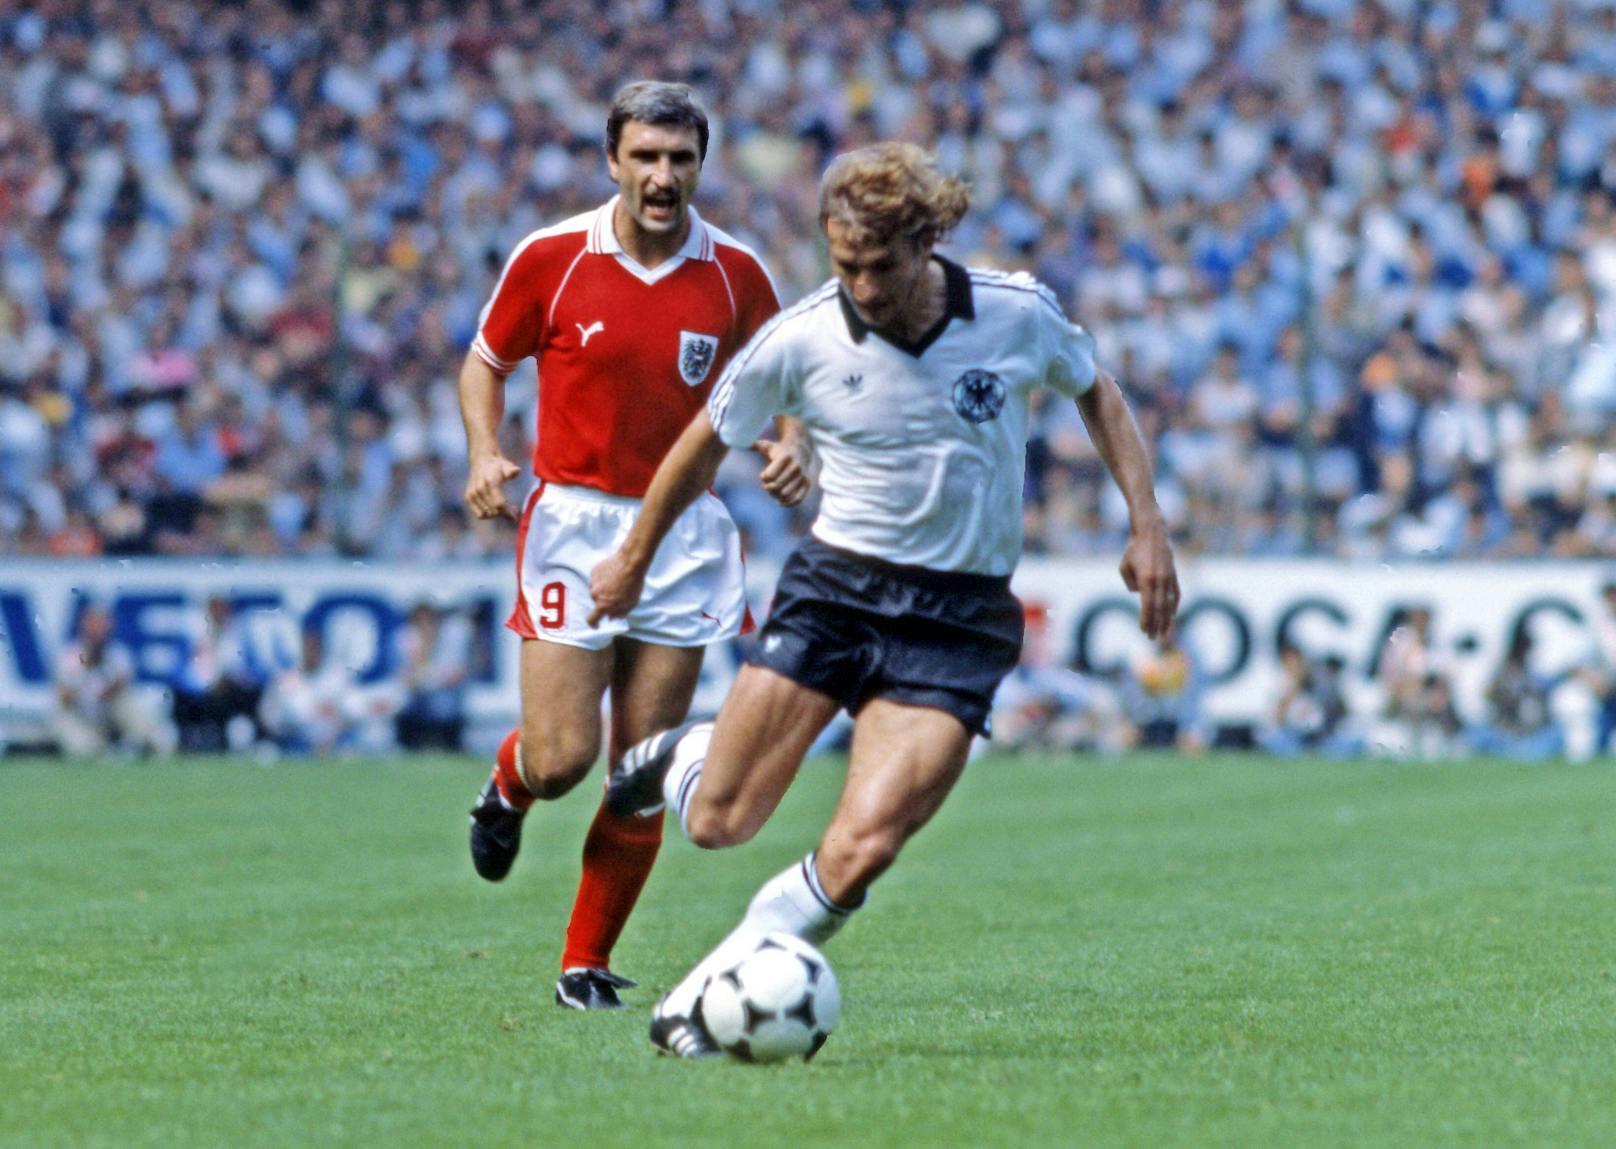 Die Schande von Gijon. 1982 schlossen Österreich und Deutschland bei der Weltmeisterschaft einen Nichtangriffspakt. Deutschland gewann 1:0, beide Teams stiegen in die nächste Runde auf. Algerien, das einen Tag vorher gewonnen hatte, musste tatenlos zusehen. Seither werden die letzten Gruppenspiele bei Endrunden zeitgleich ausgetragen.